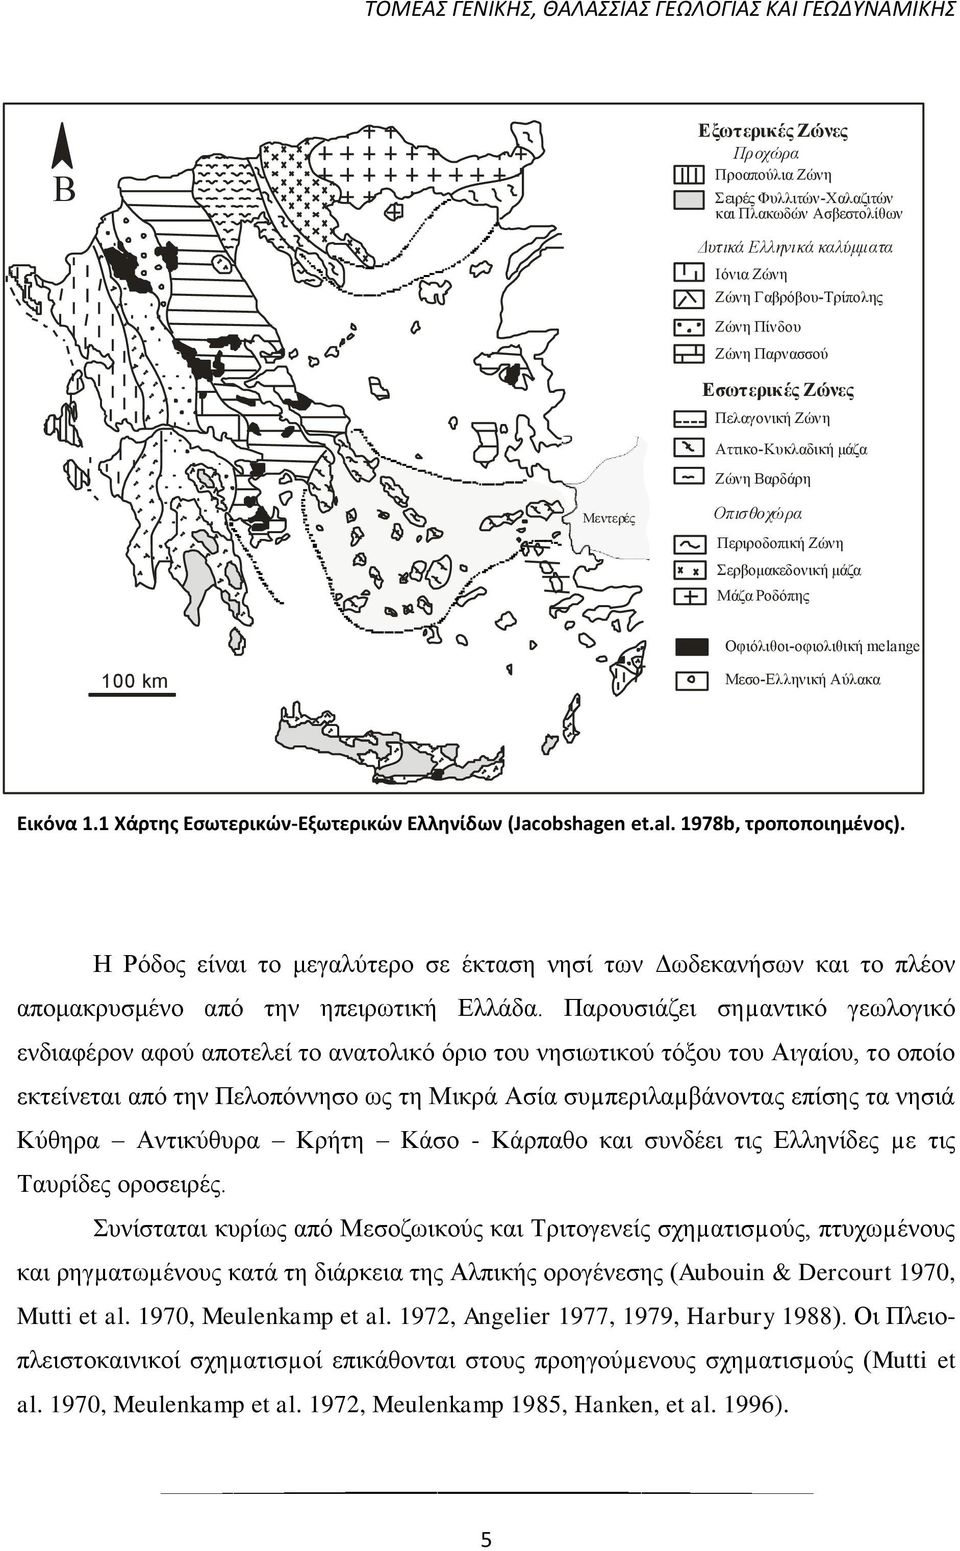 1 Χάρτης Εσωτερικών-Εξωτερικών Ελληνίδων (Jacobshagen et.al. 1978b, τροποποιημένος). Η Ρόδος είναι το μεγαλύτερο σε έκταση νησί των Δωδεκανήσων και το πλέον απομακρυσμένο από την ηπειρωτική Ελλάδα.